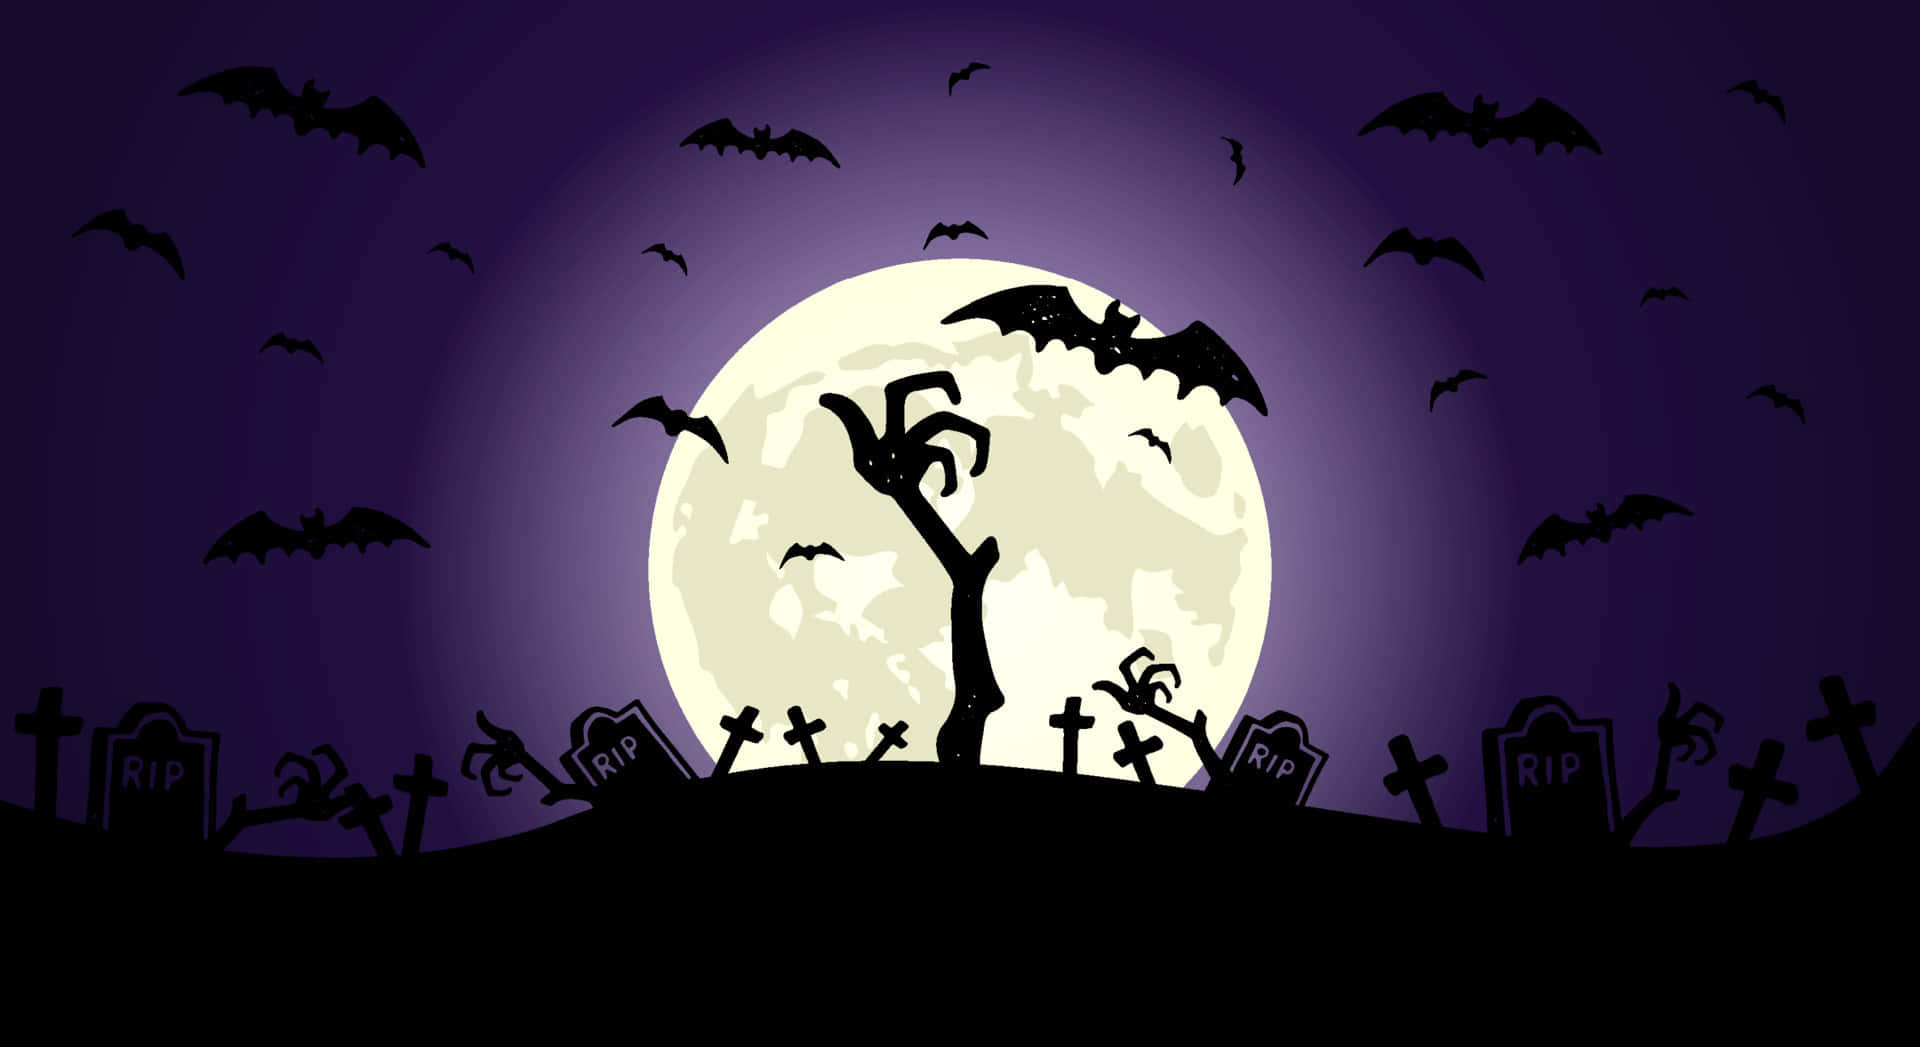 Kyrkogårdpå Natten Estetiskt Läskig Halloween-bakgrund.